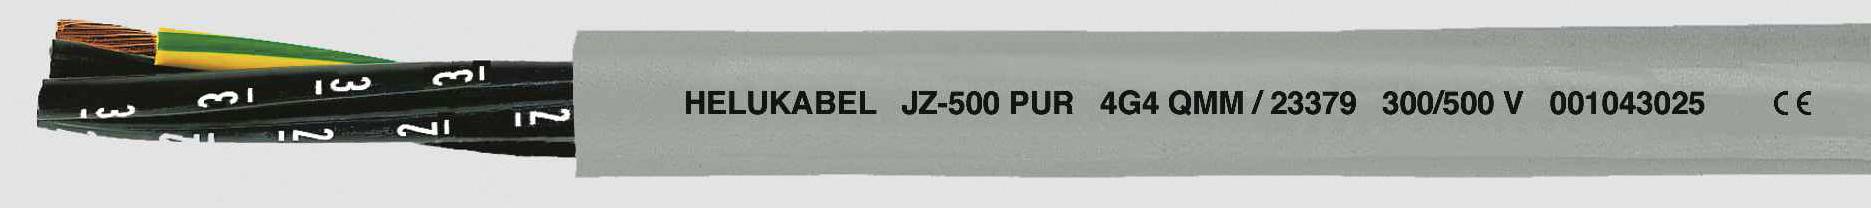 HELUKABEL JZ-500 PUR Steuerleitung 4 G 1.50 mm² Grau 23363-1000 1000 m